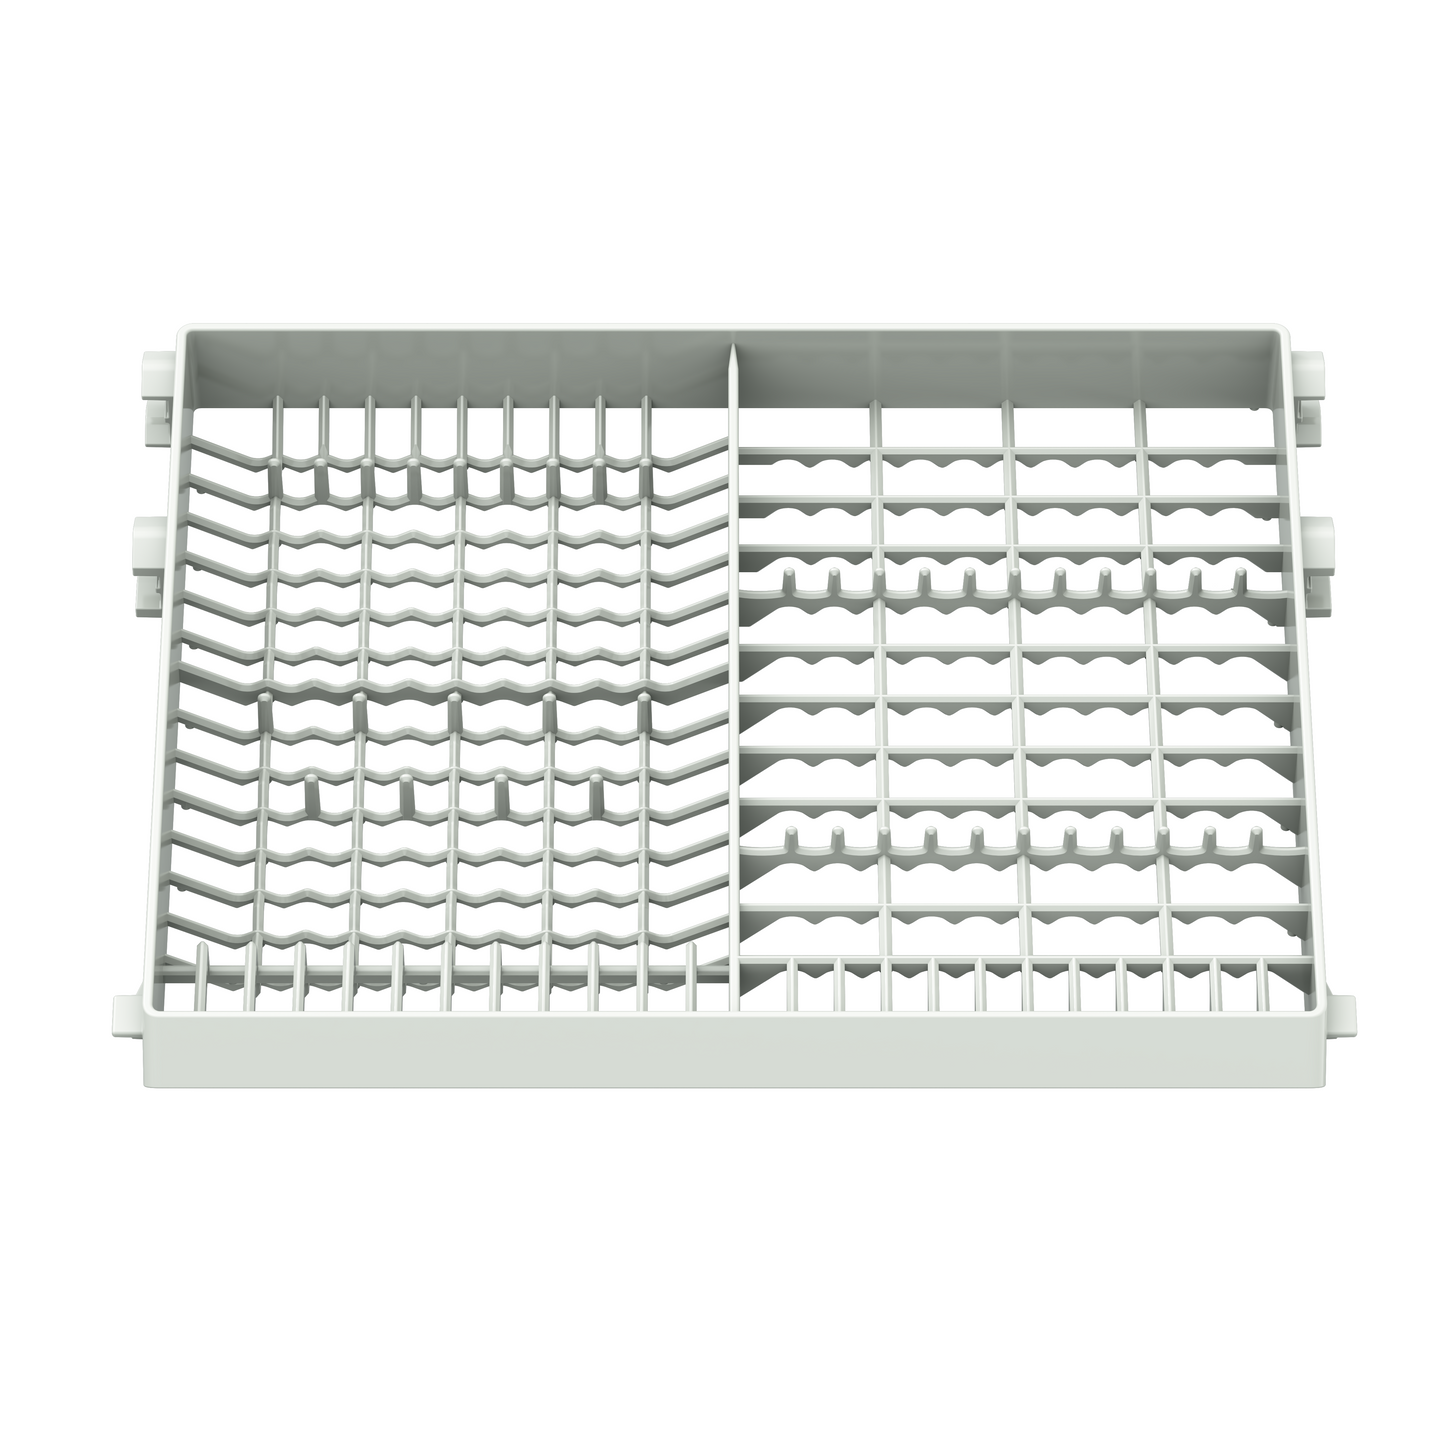 Dishwasher upper rack for TDQR03, TDQR03A